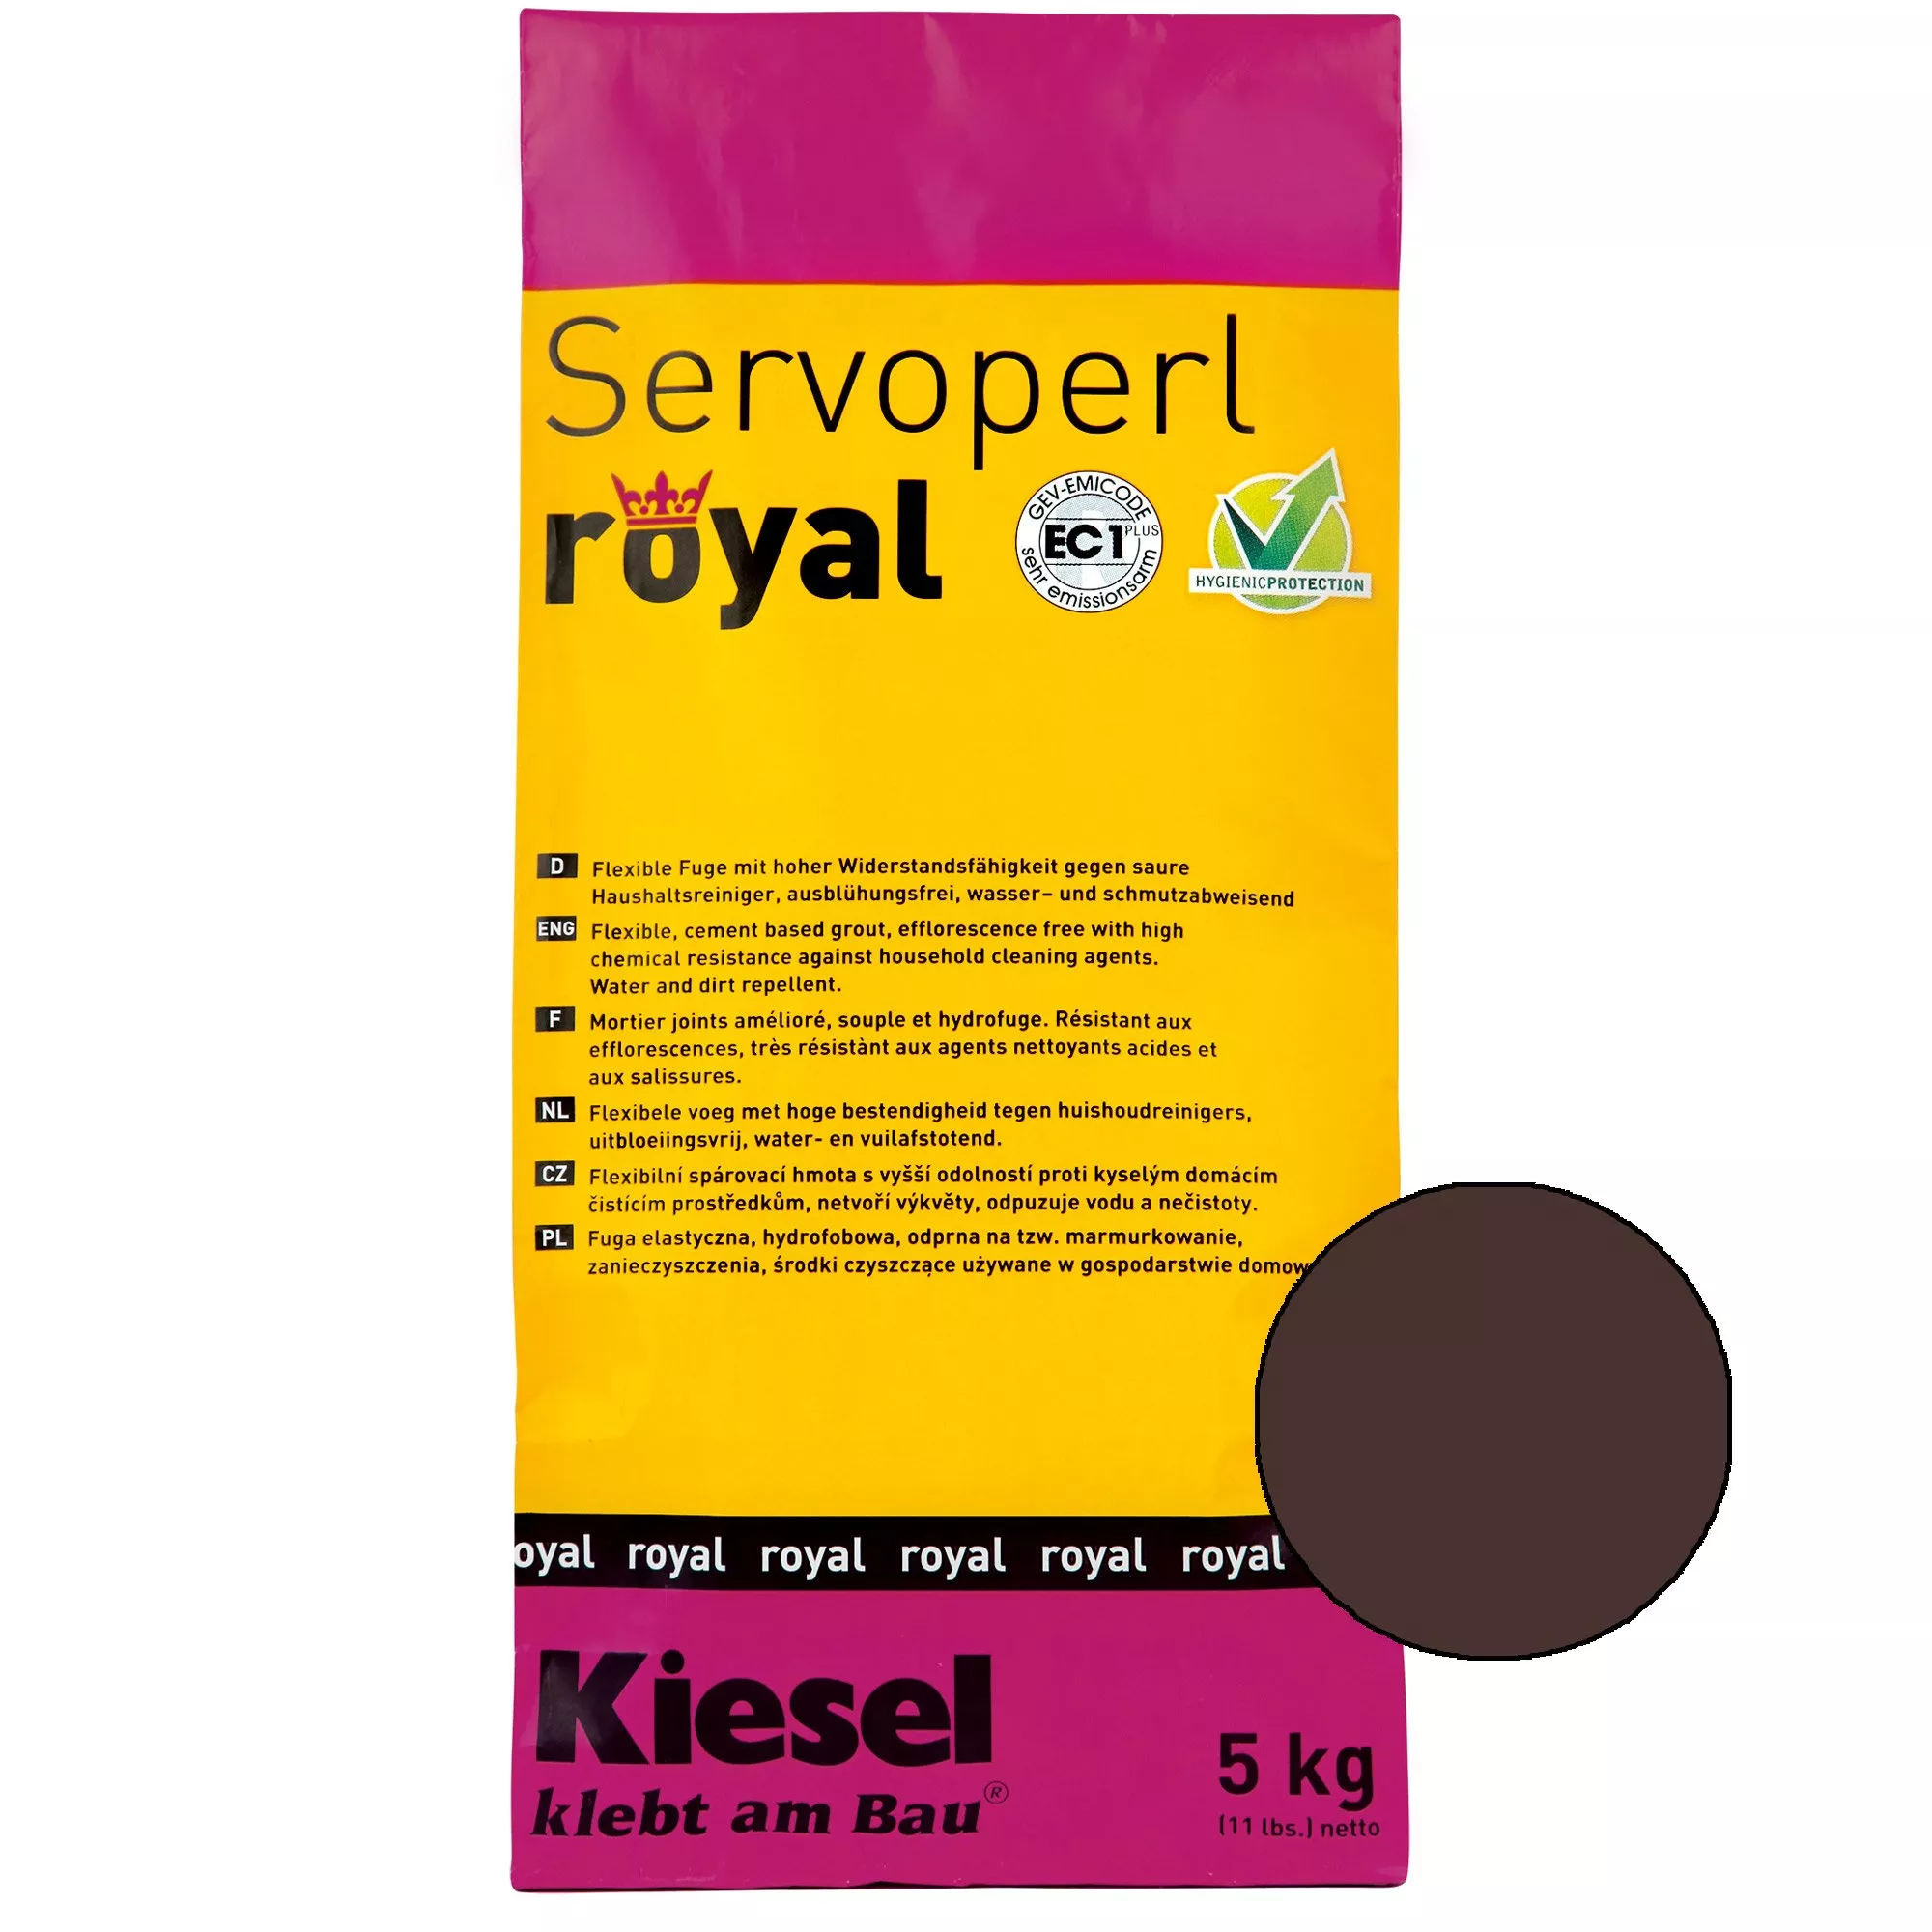 Kiesel Servoperl royal - Flexible, wasser- und schmutzabweisende Fuge (5KG Balibraun)